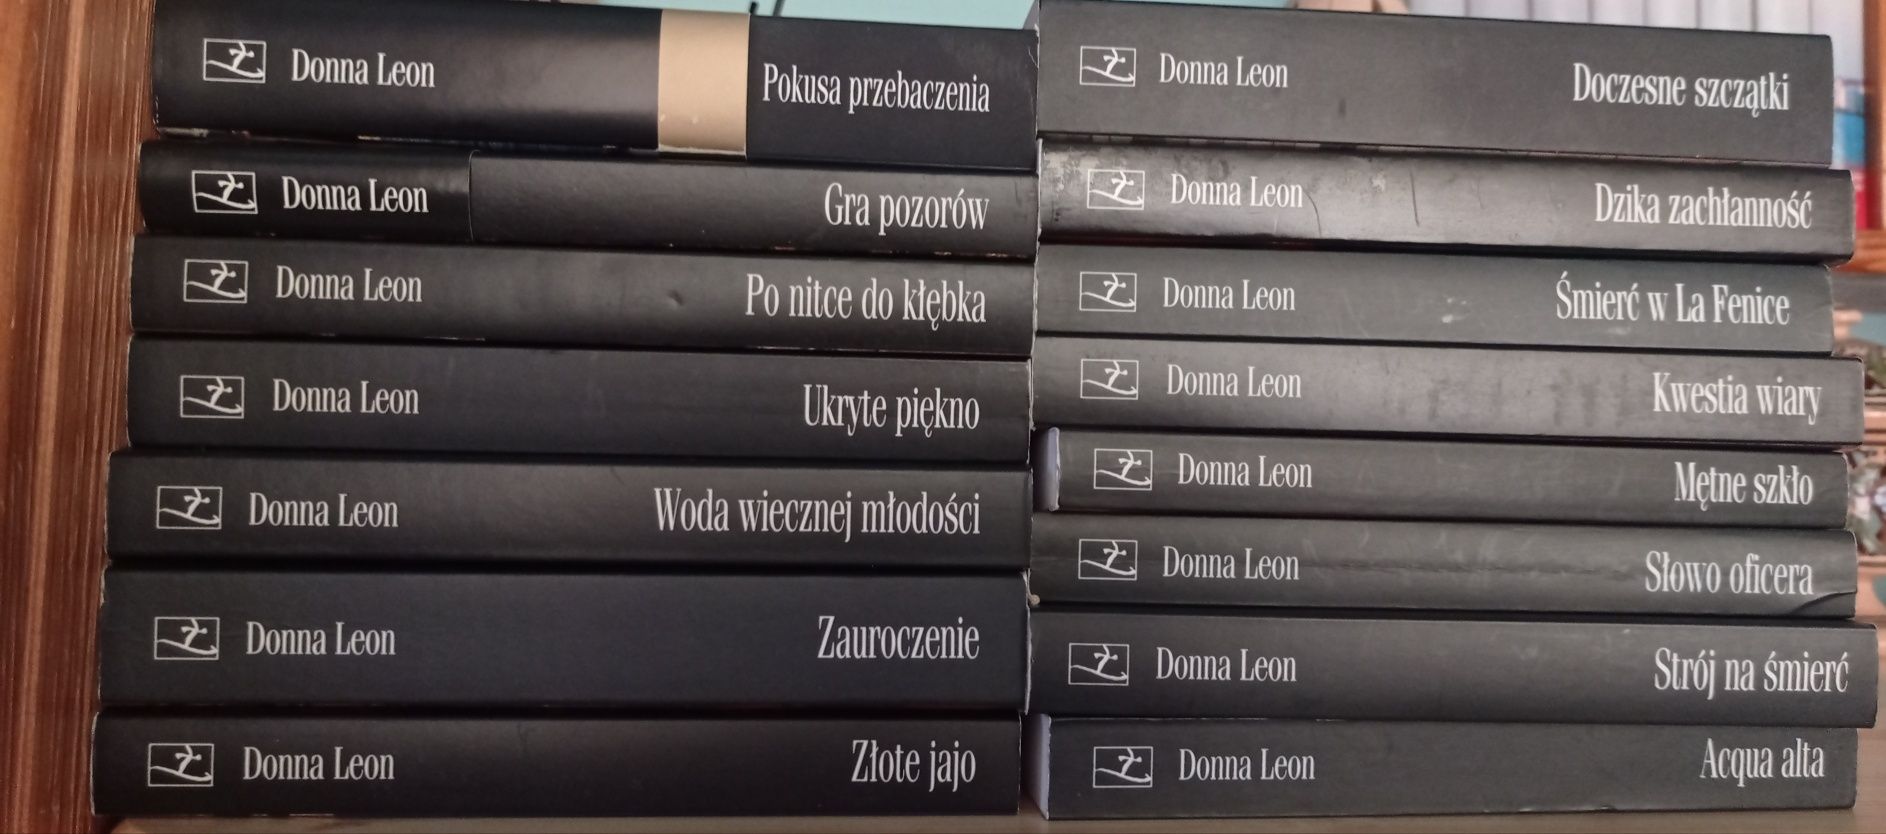 Donna Leon - seria książek